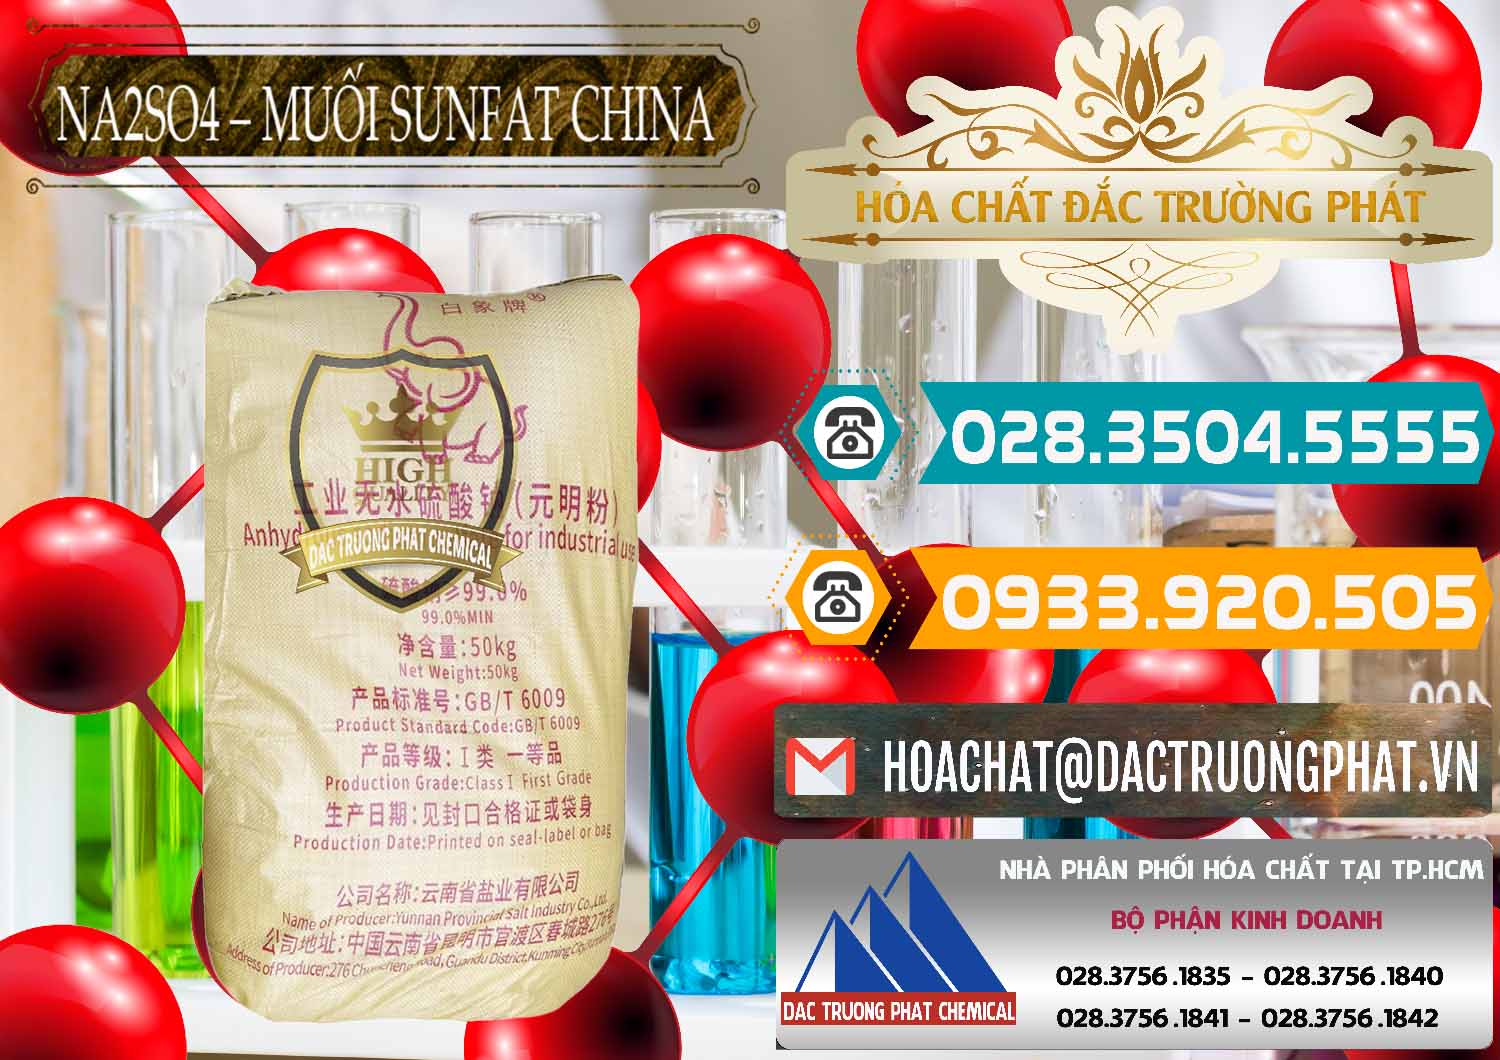 Chuyên cung ứng & bán Sodium Sulphate - Muối Sunfat Na2SO4 Logo Con Voi Trung Quốc China - 0409 - Cty cung ứng và phân phối hóa chất tại TP.HCM - congtyhoachat.vn